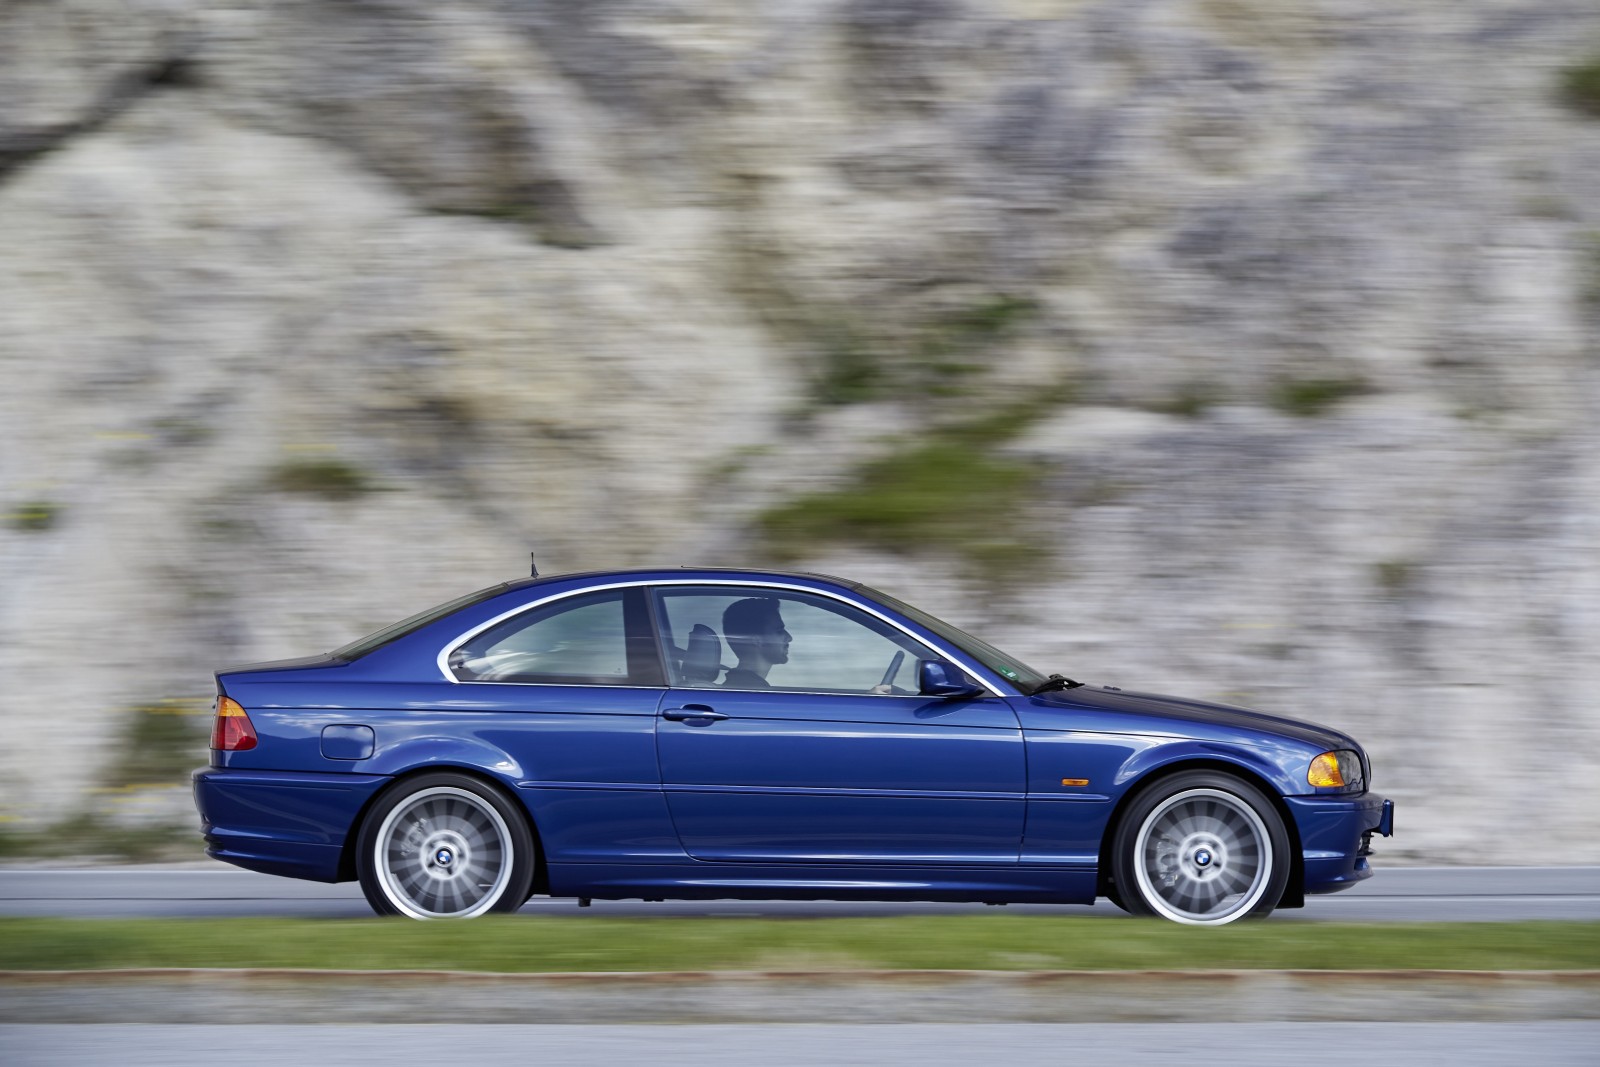 Afbeeldingsresultaat voor BMW E46 3 coupé 1998-2005 presentation photos